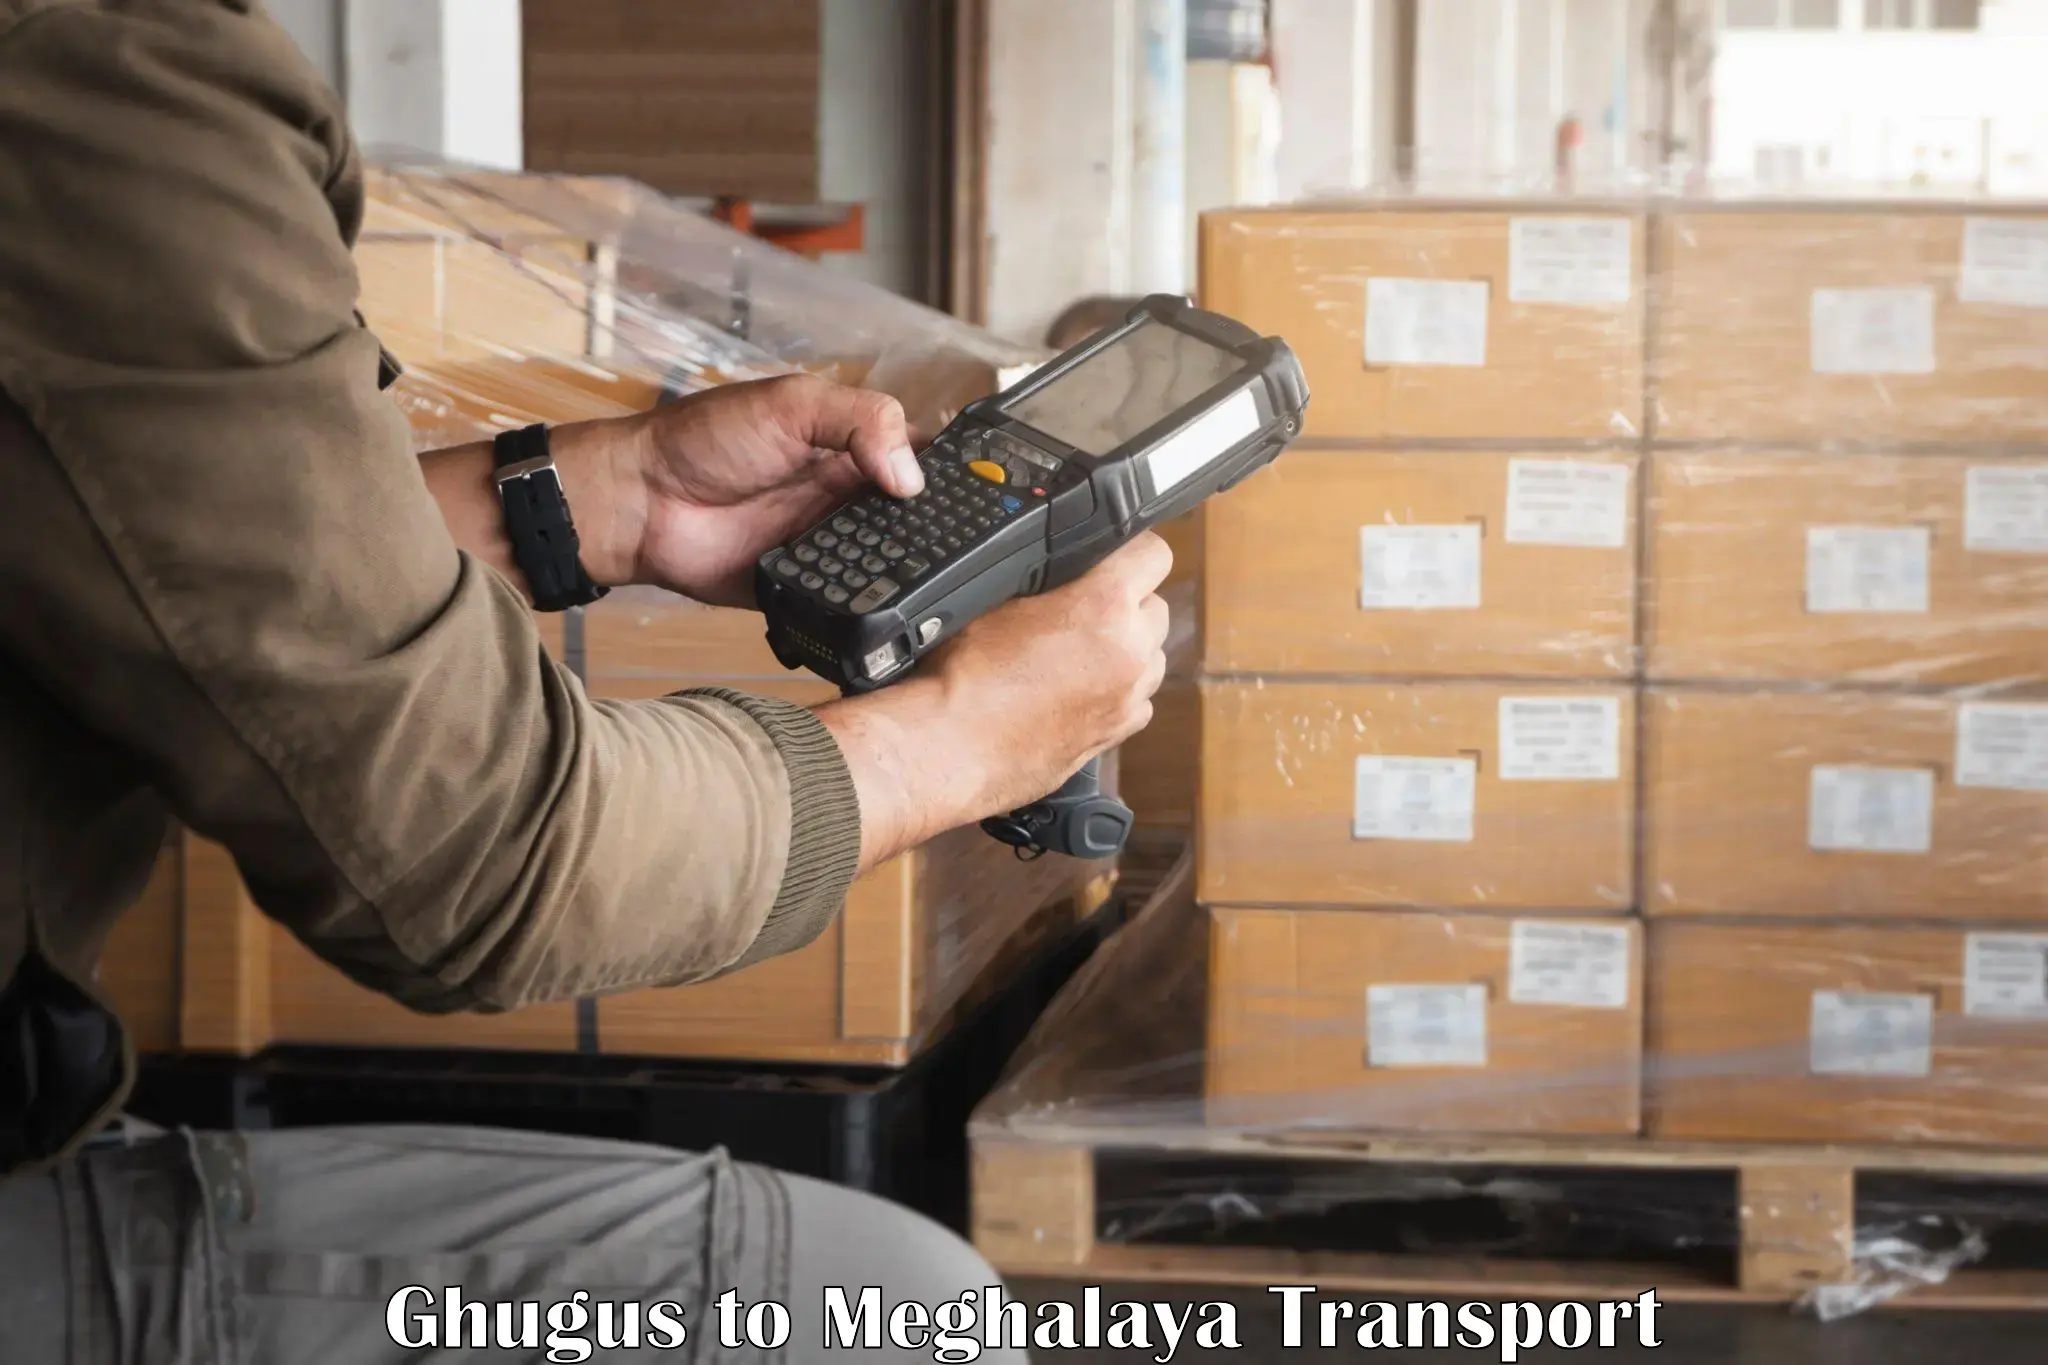 Furniture transport service Ghugus to Meghalaya